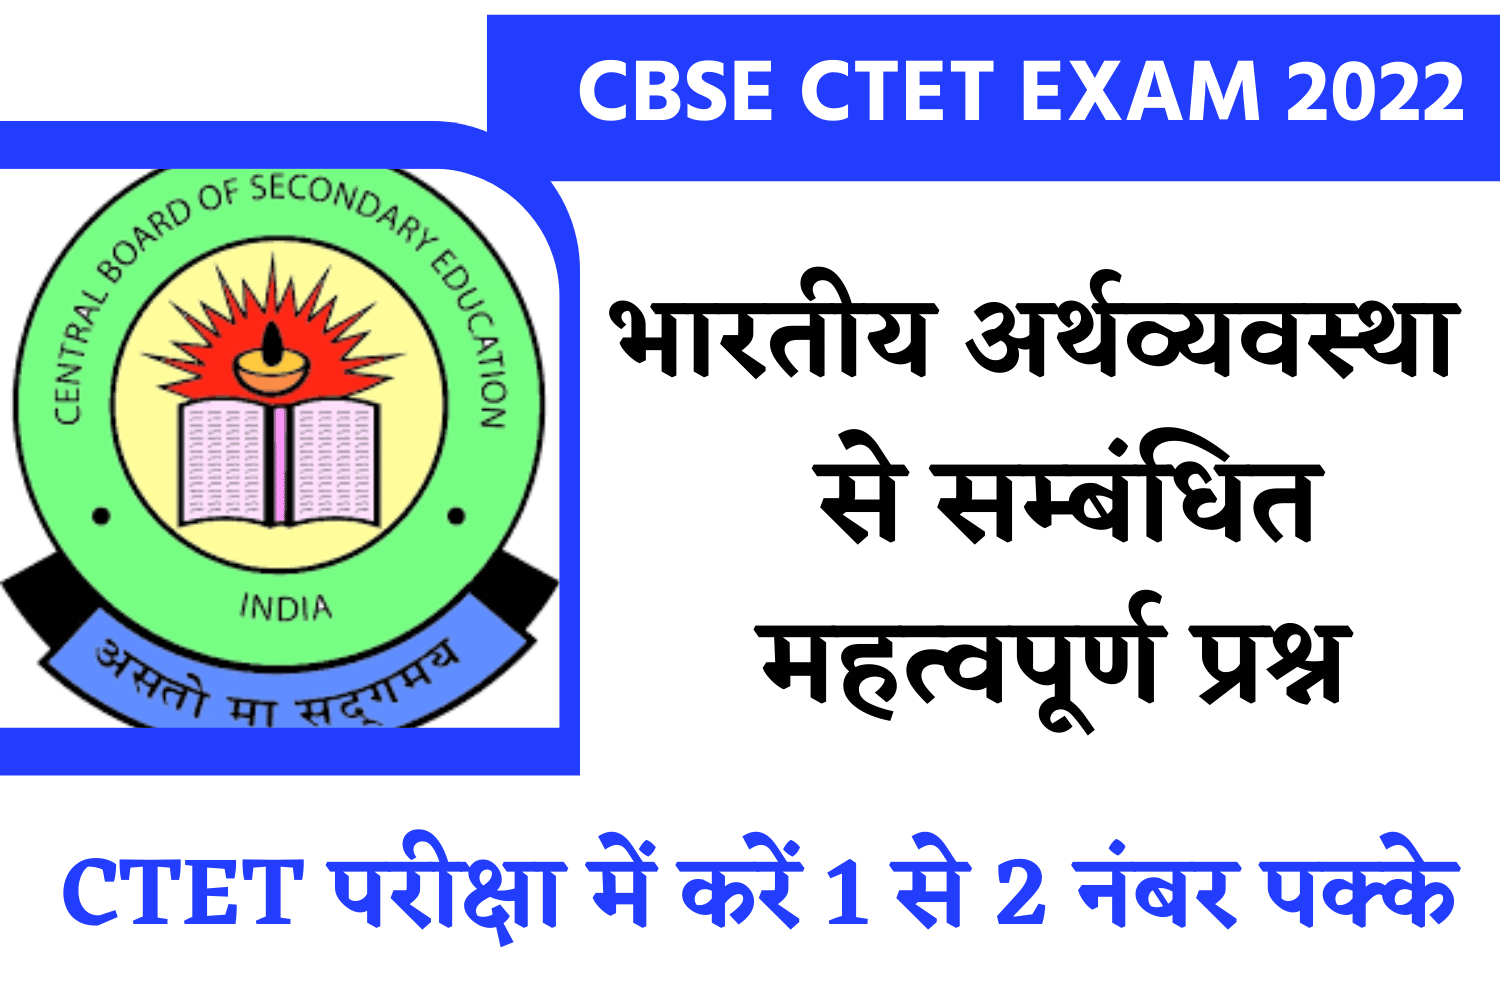 CBSE Ctet Exam 2022 | परीक्षा में पूछें गये भारतीय अर्थव्यवस्था से सम्बंधित महत्वपूर्ण प्रश्न, अवश्य पढ़ें